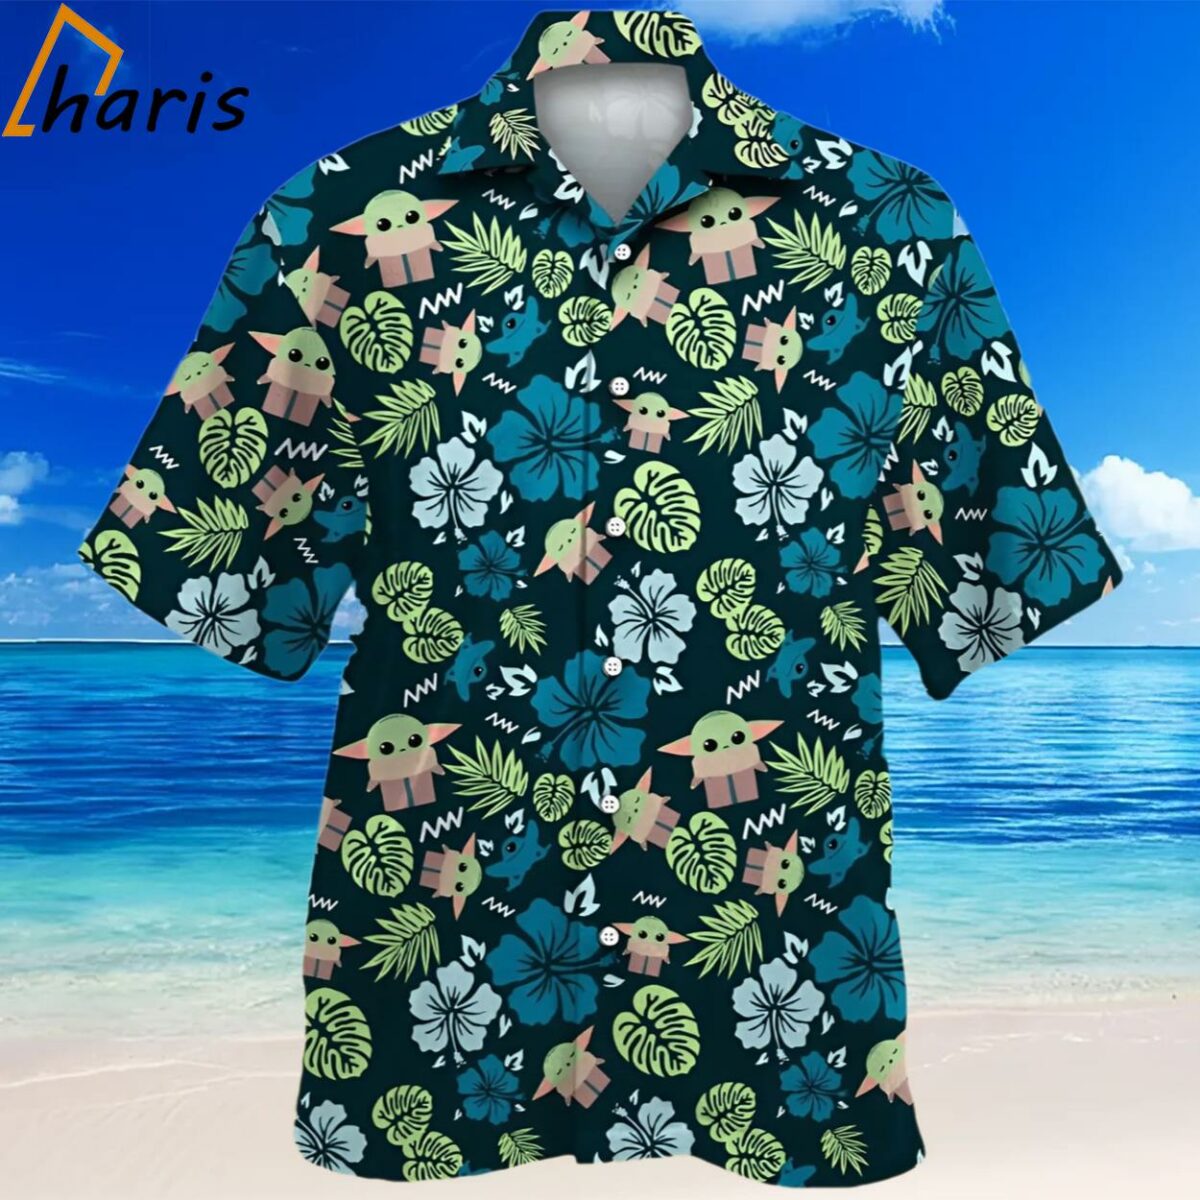 Star Wars Grogu Baby Yoda Tropical Leaves Hawaiian Shirt 2 2